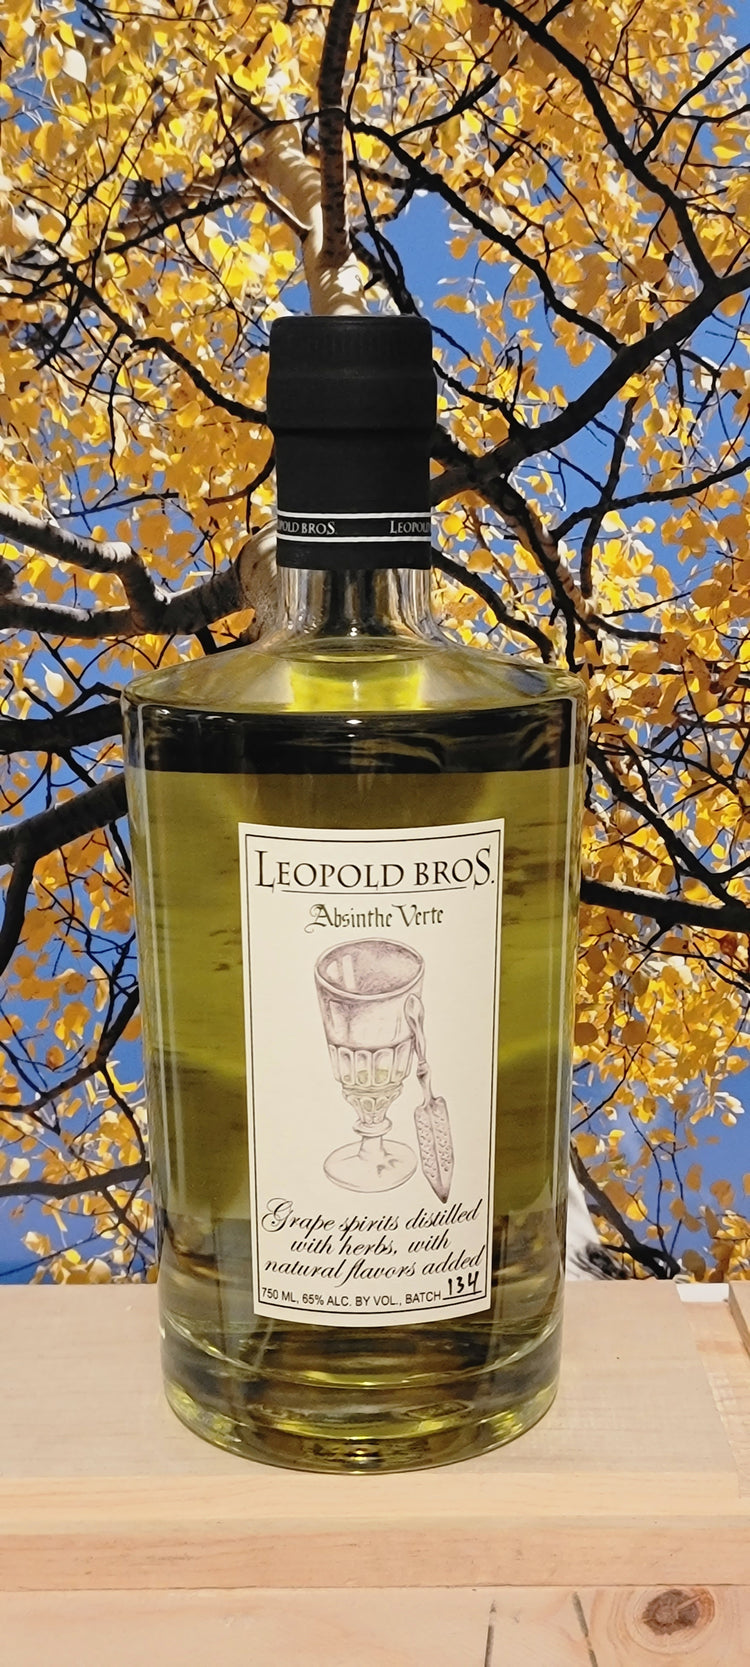 Leopold bros absinthe